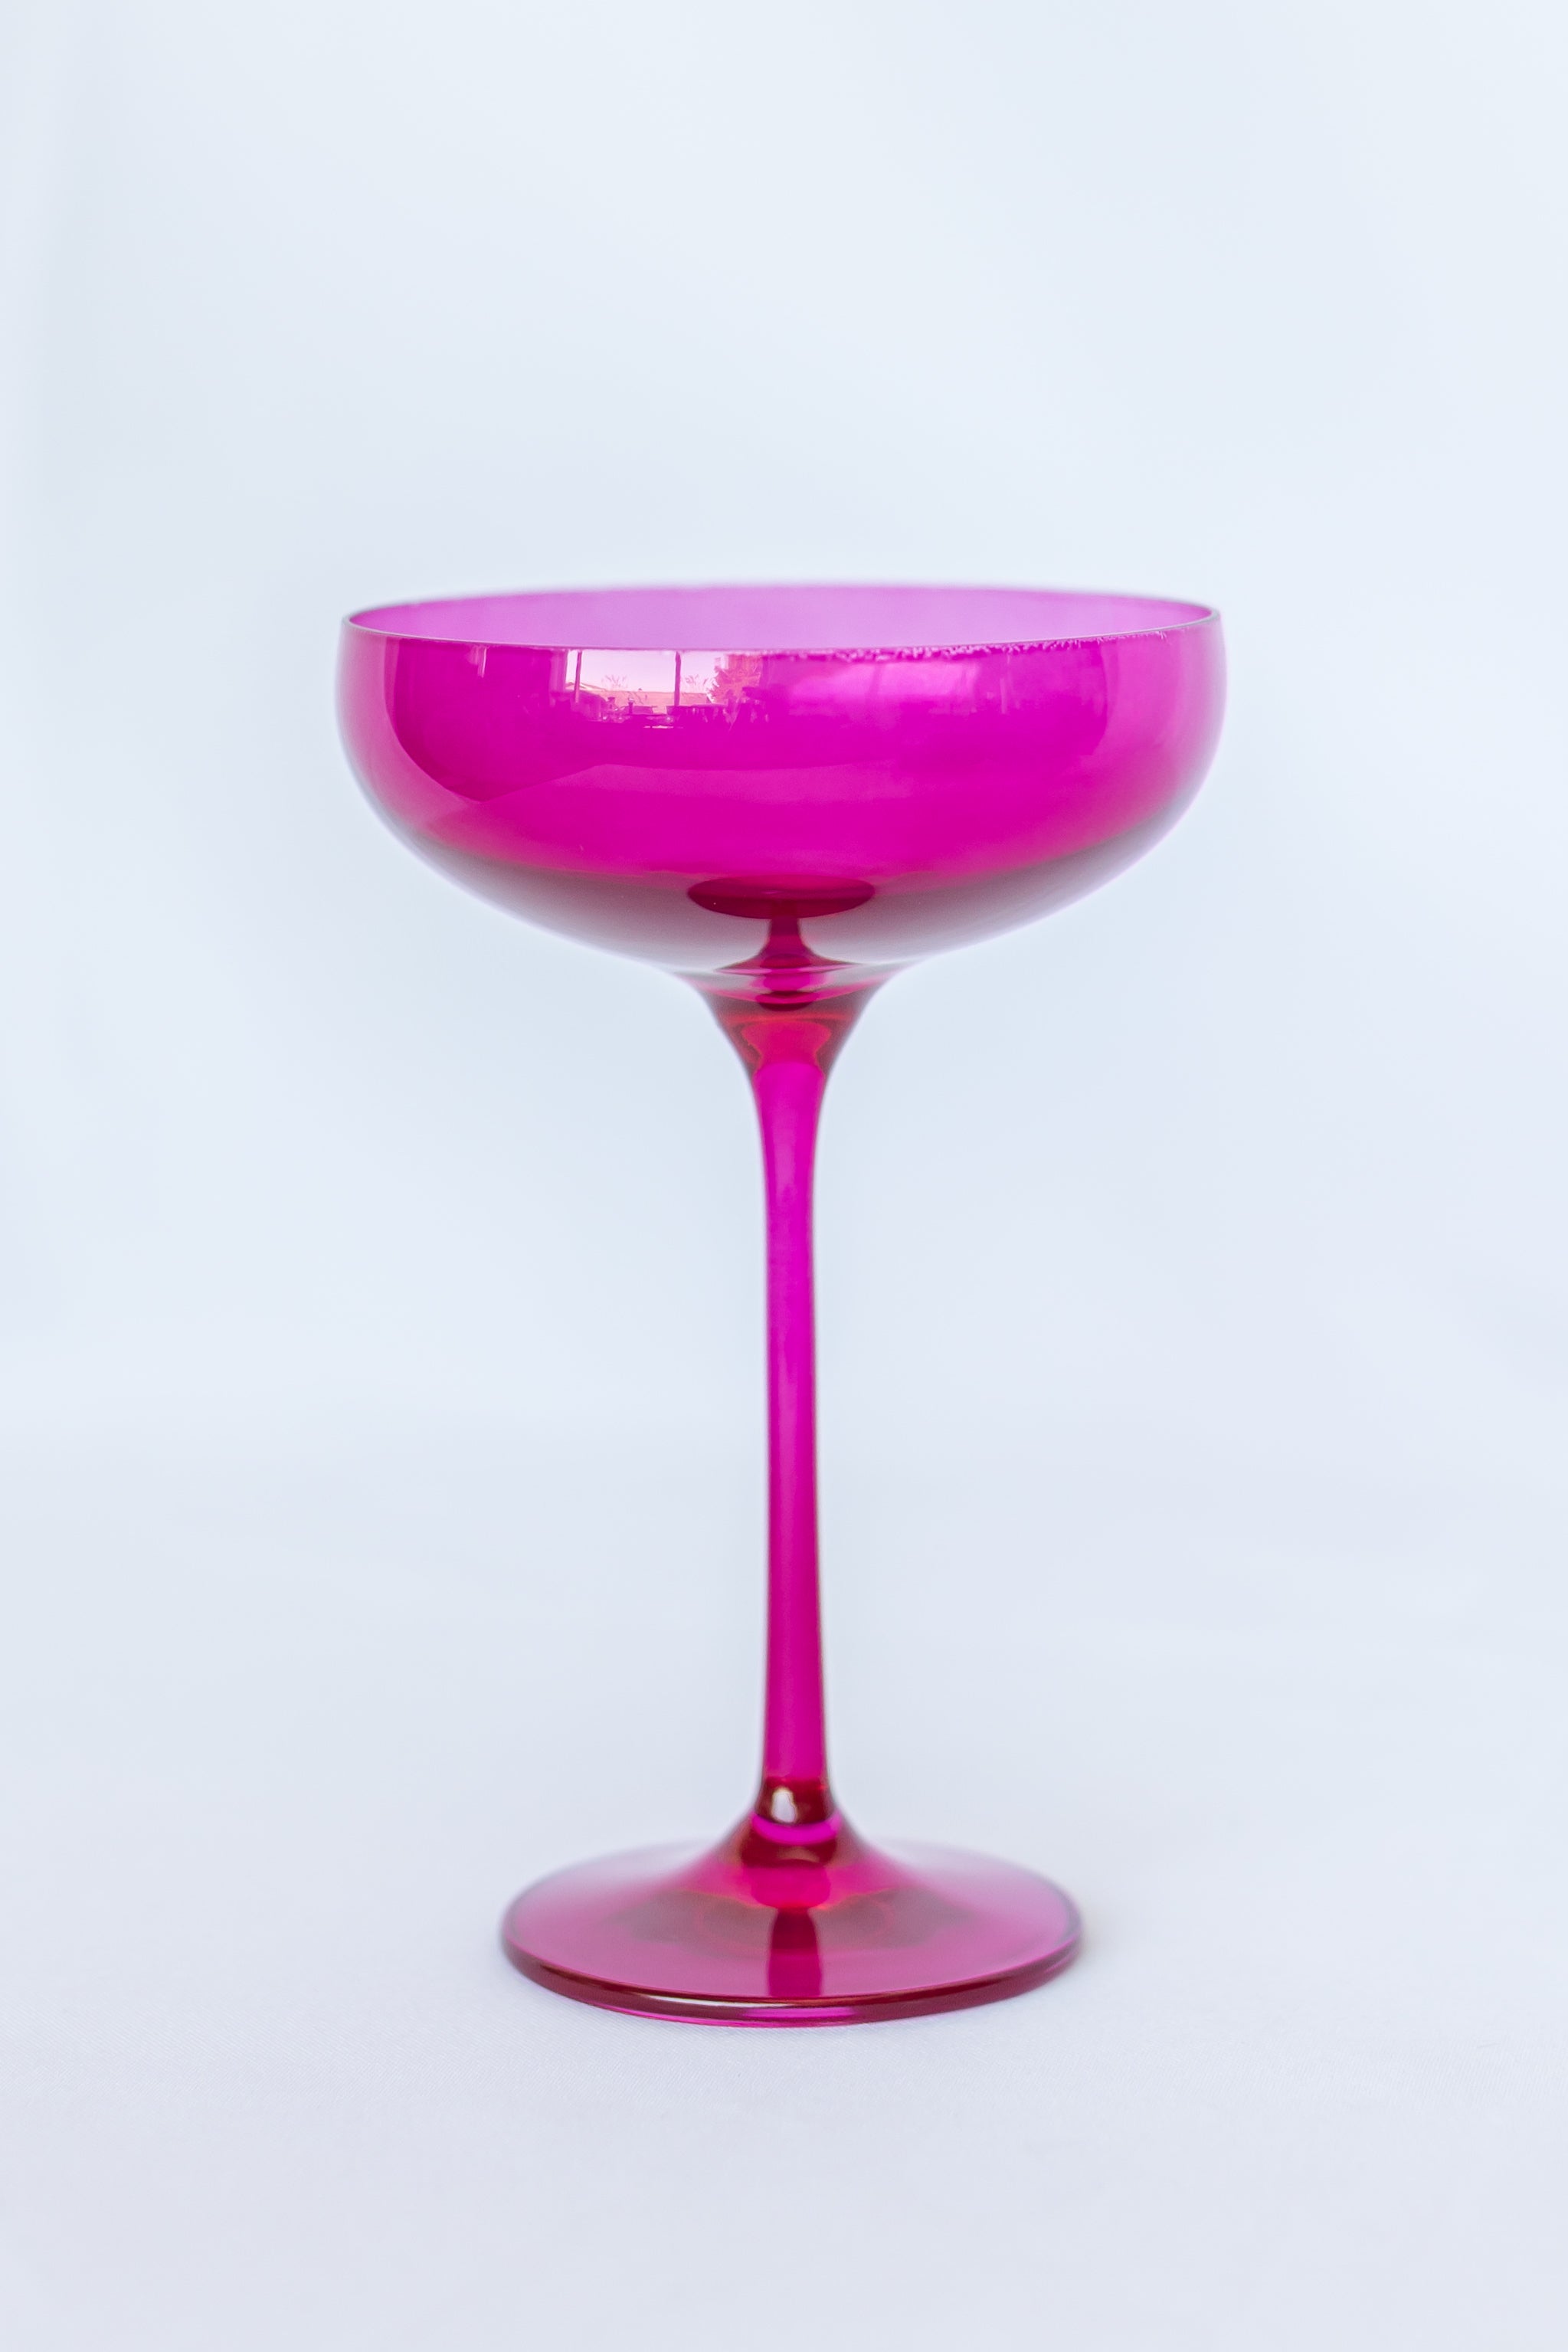 Estelle Colored Champagne Coupe Stemware - Set of 6 {Viva Magenta (Our Fuchsia)}